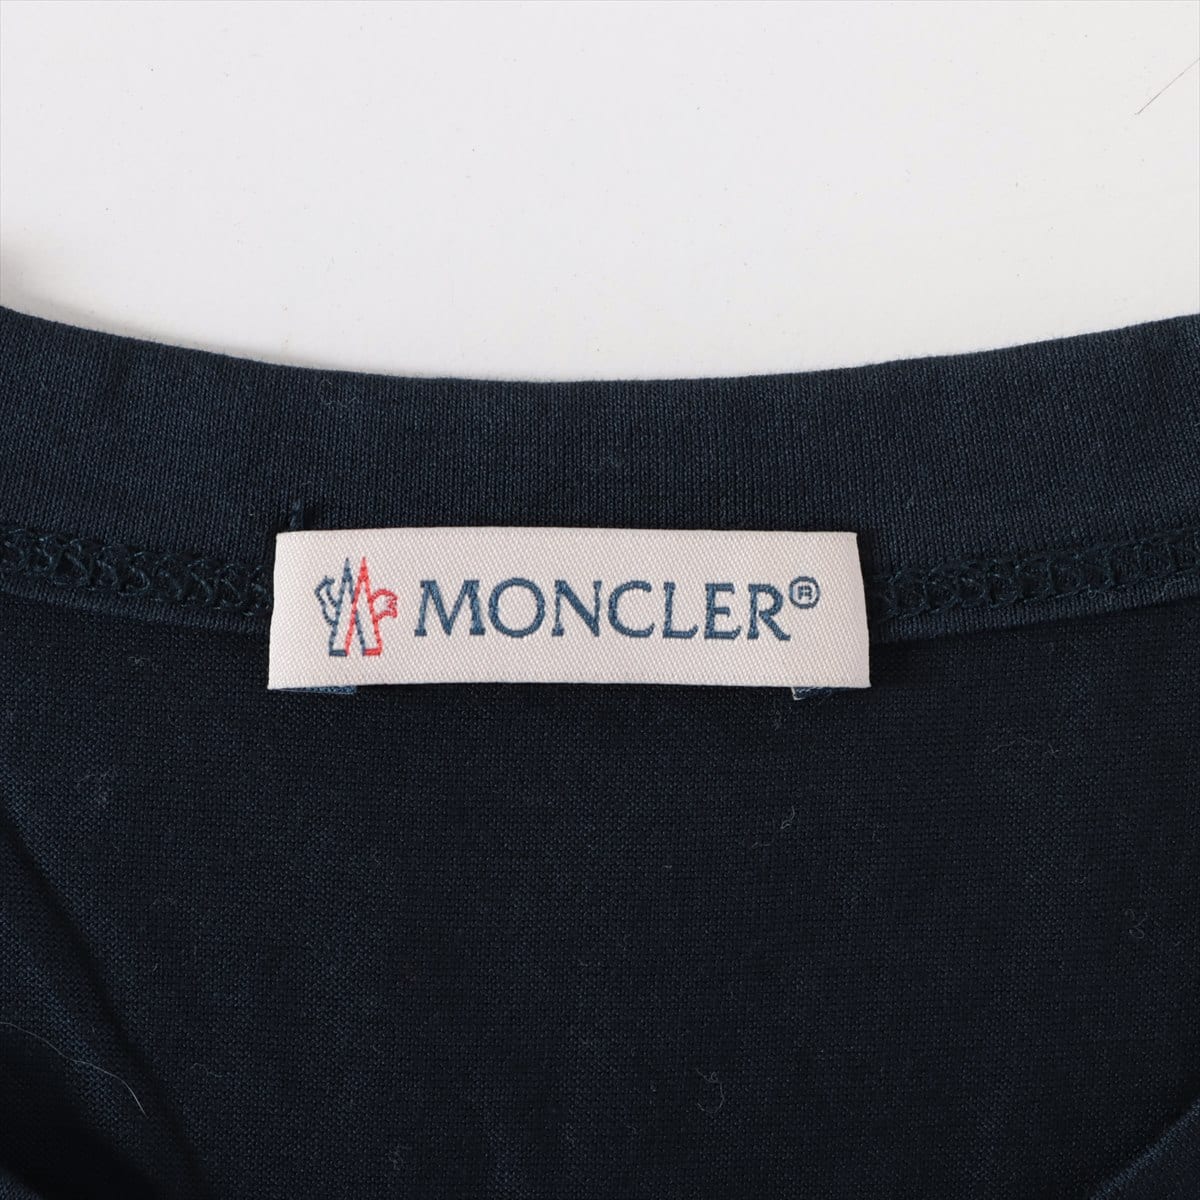 Moncler 17 years Cotton T-shirt S Men's Navy blue  D10918032500